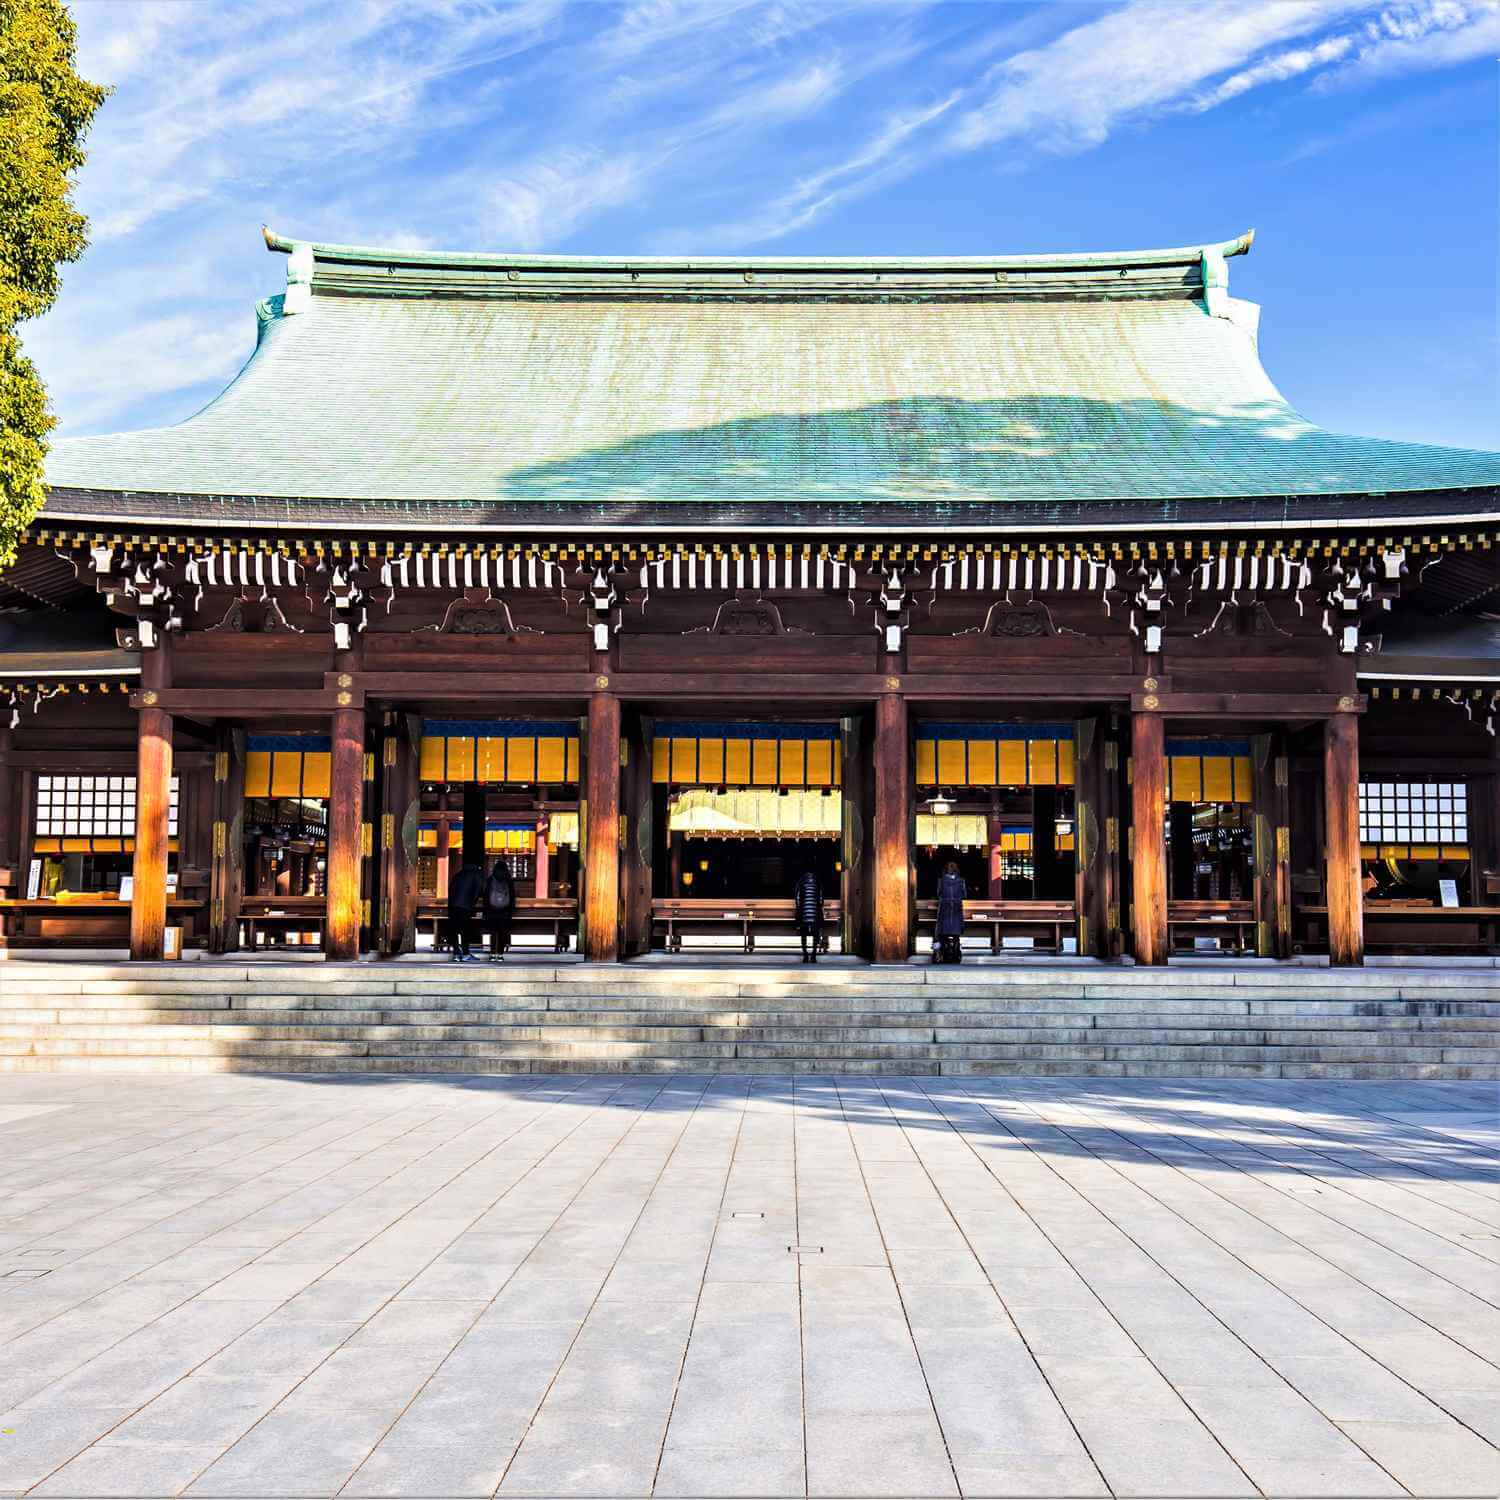  The Meiji Jingu Shrine in Tokyo = AdobeStock 9